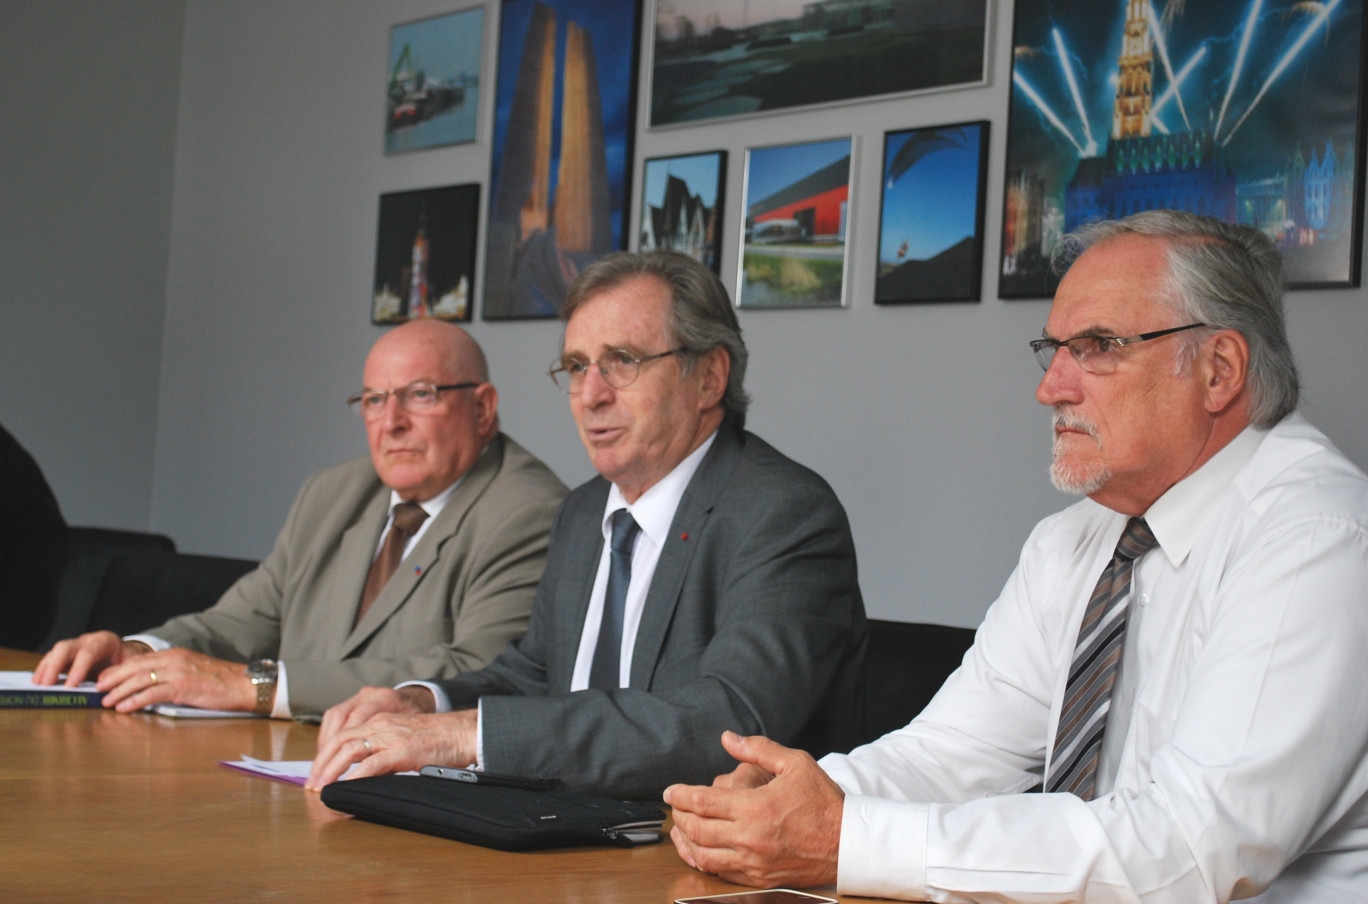 Lors de la conférence de presse, de gauche à droite, Jacky Lebrun, président de la CCI Picardie, Philippe Vasseur, président de la CCI Nord de France, et Edouard Magnaval, président de la CCI Artois.